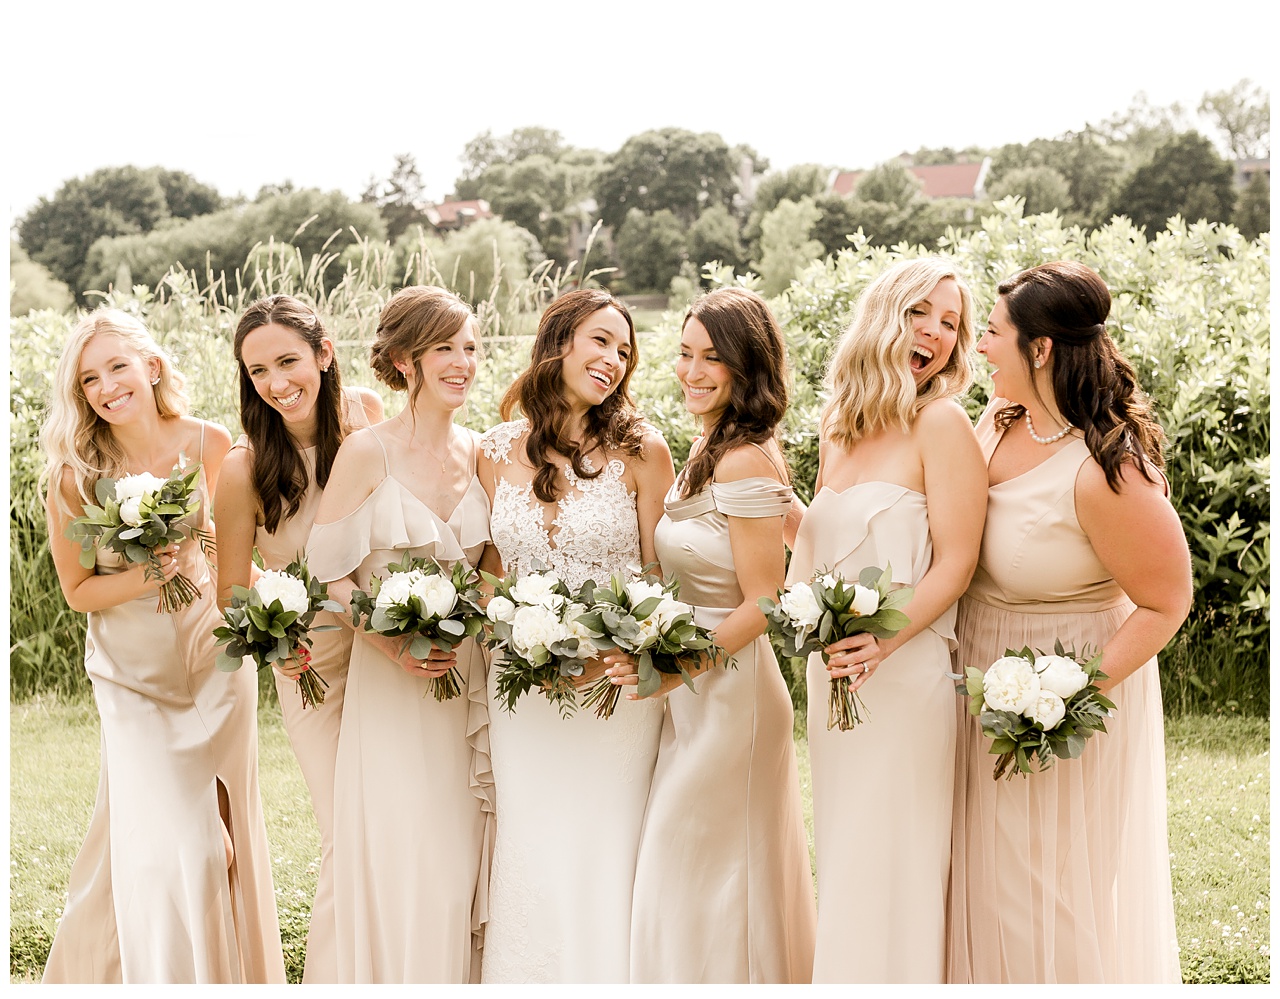 Bridesmaids mixed neutral color dresses